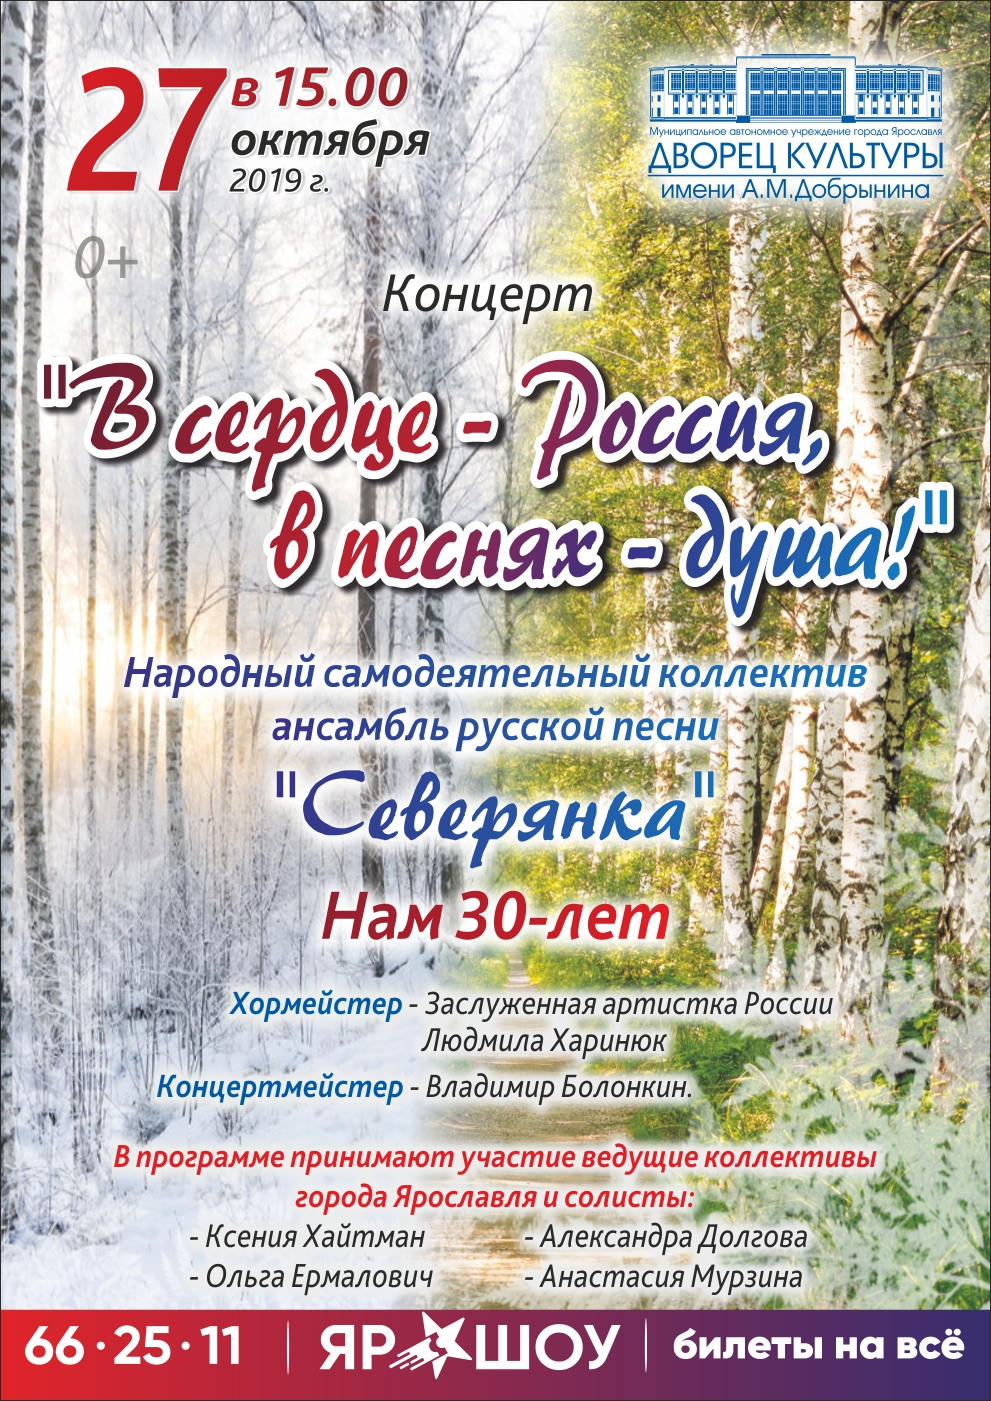 В СЕРДЦЕ - РОССИЯ - В ПЕСНЯХ- ДУША! 27.10.19